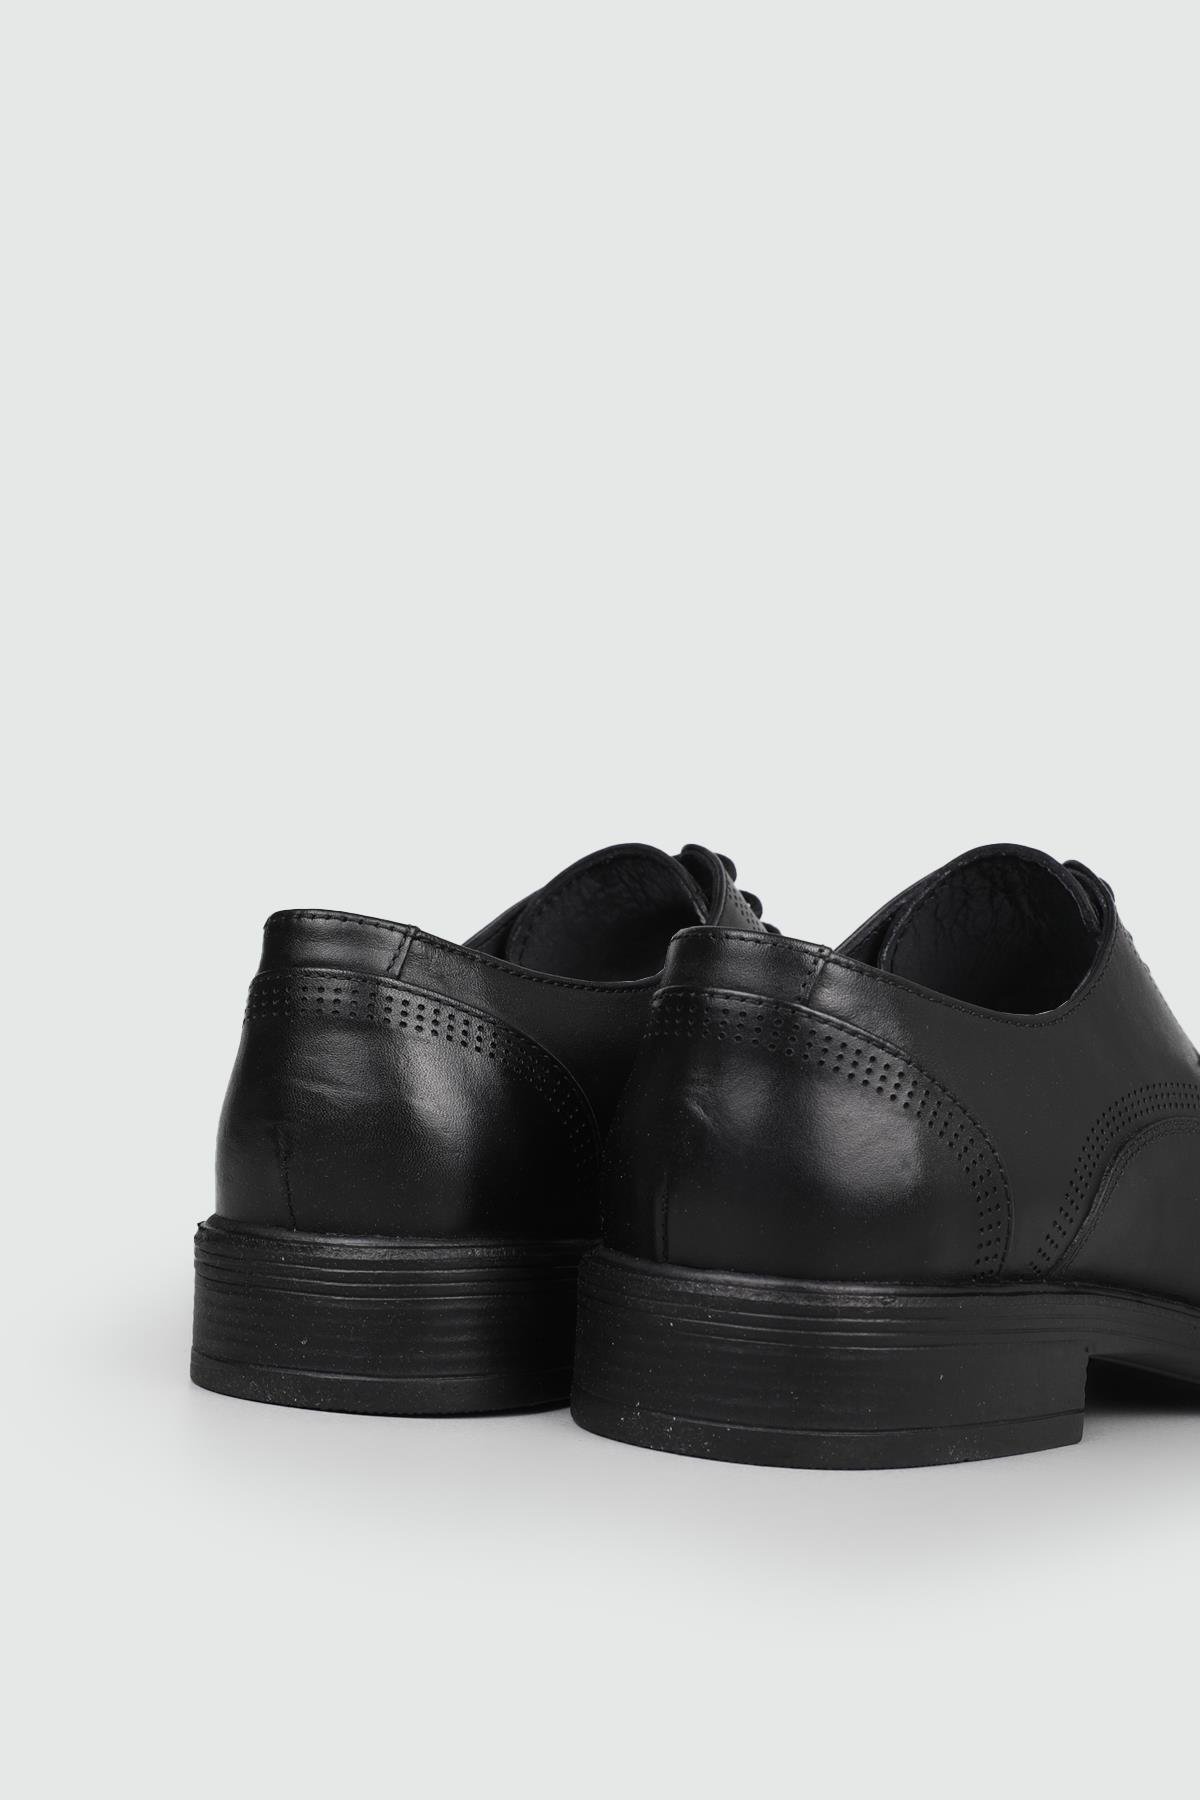 Berenni Klasik Deri Siyah Erkek Ayakkabı 387 | Ayakkabı City